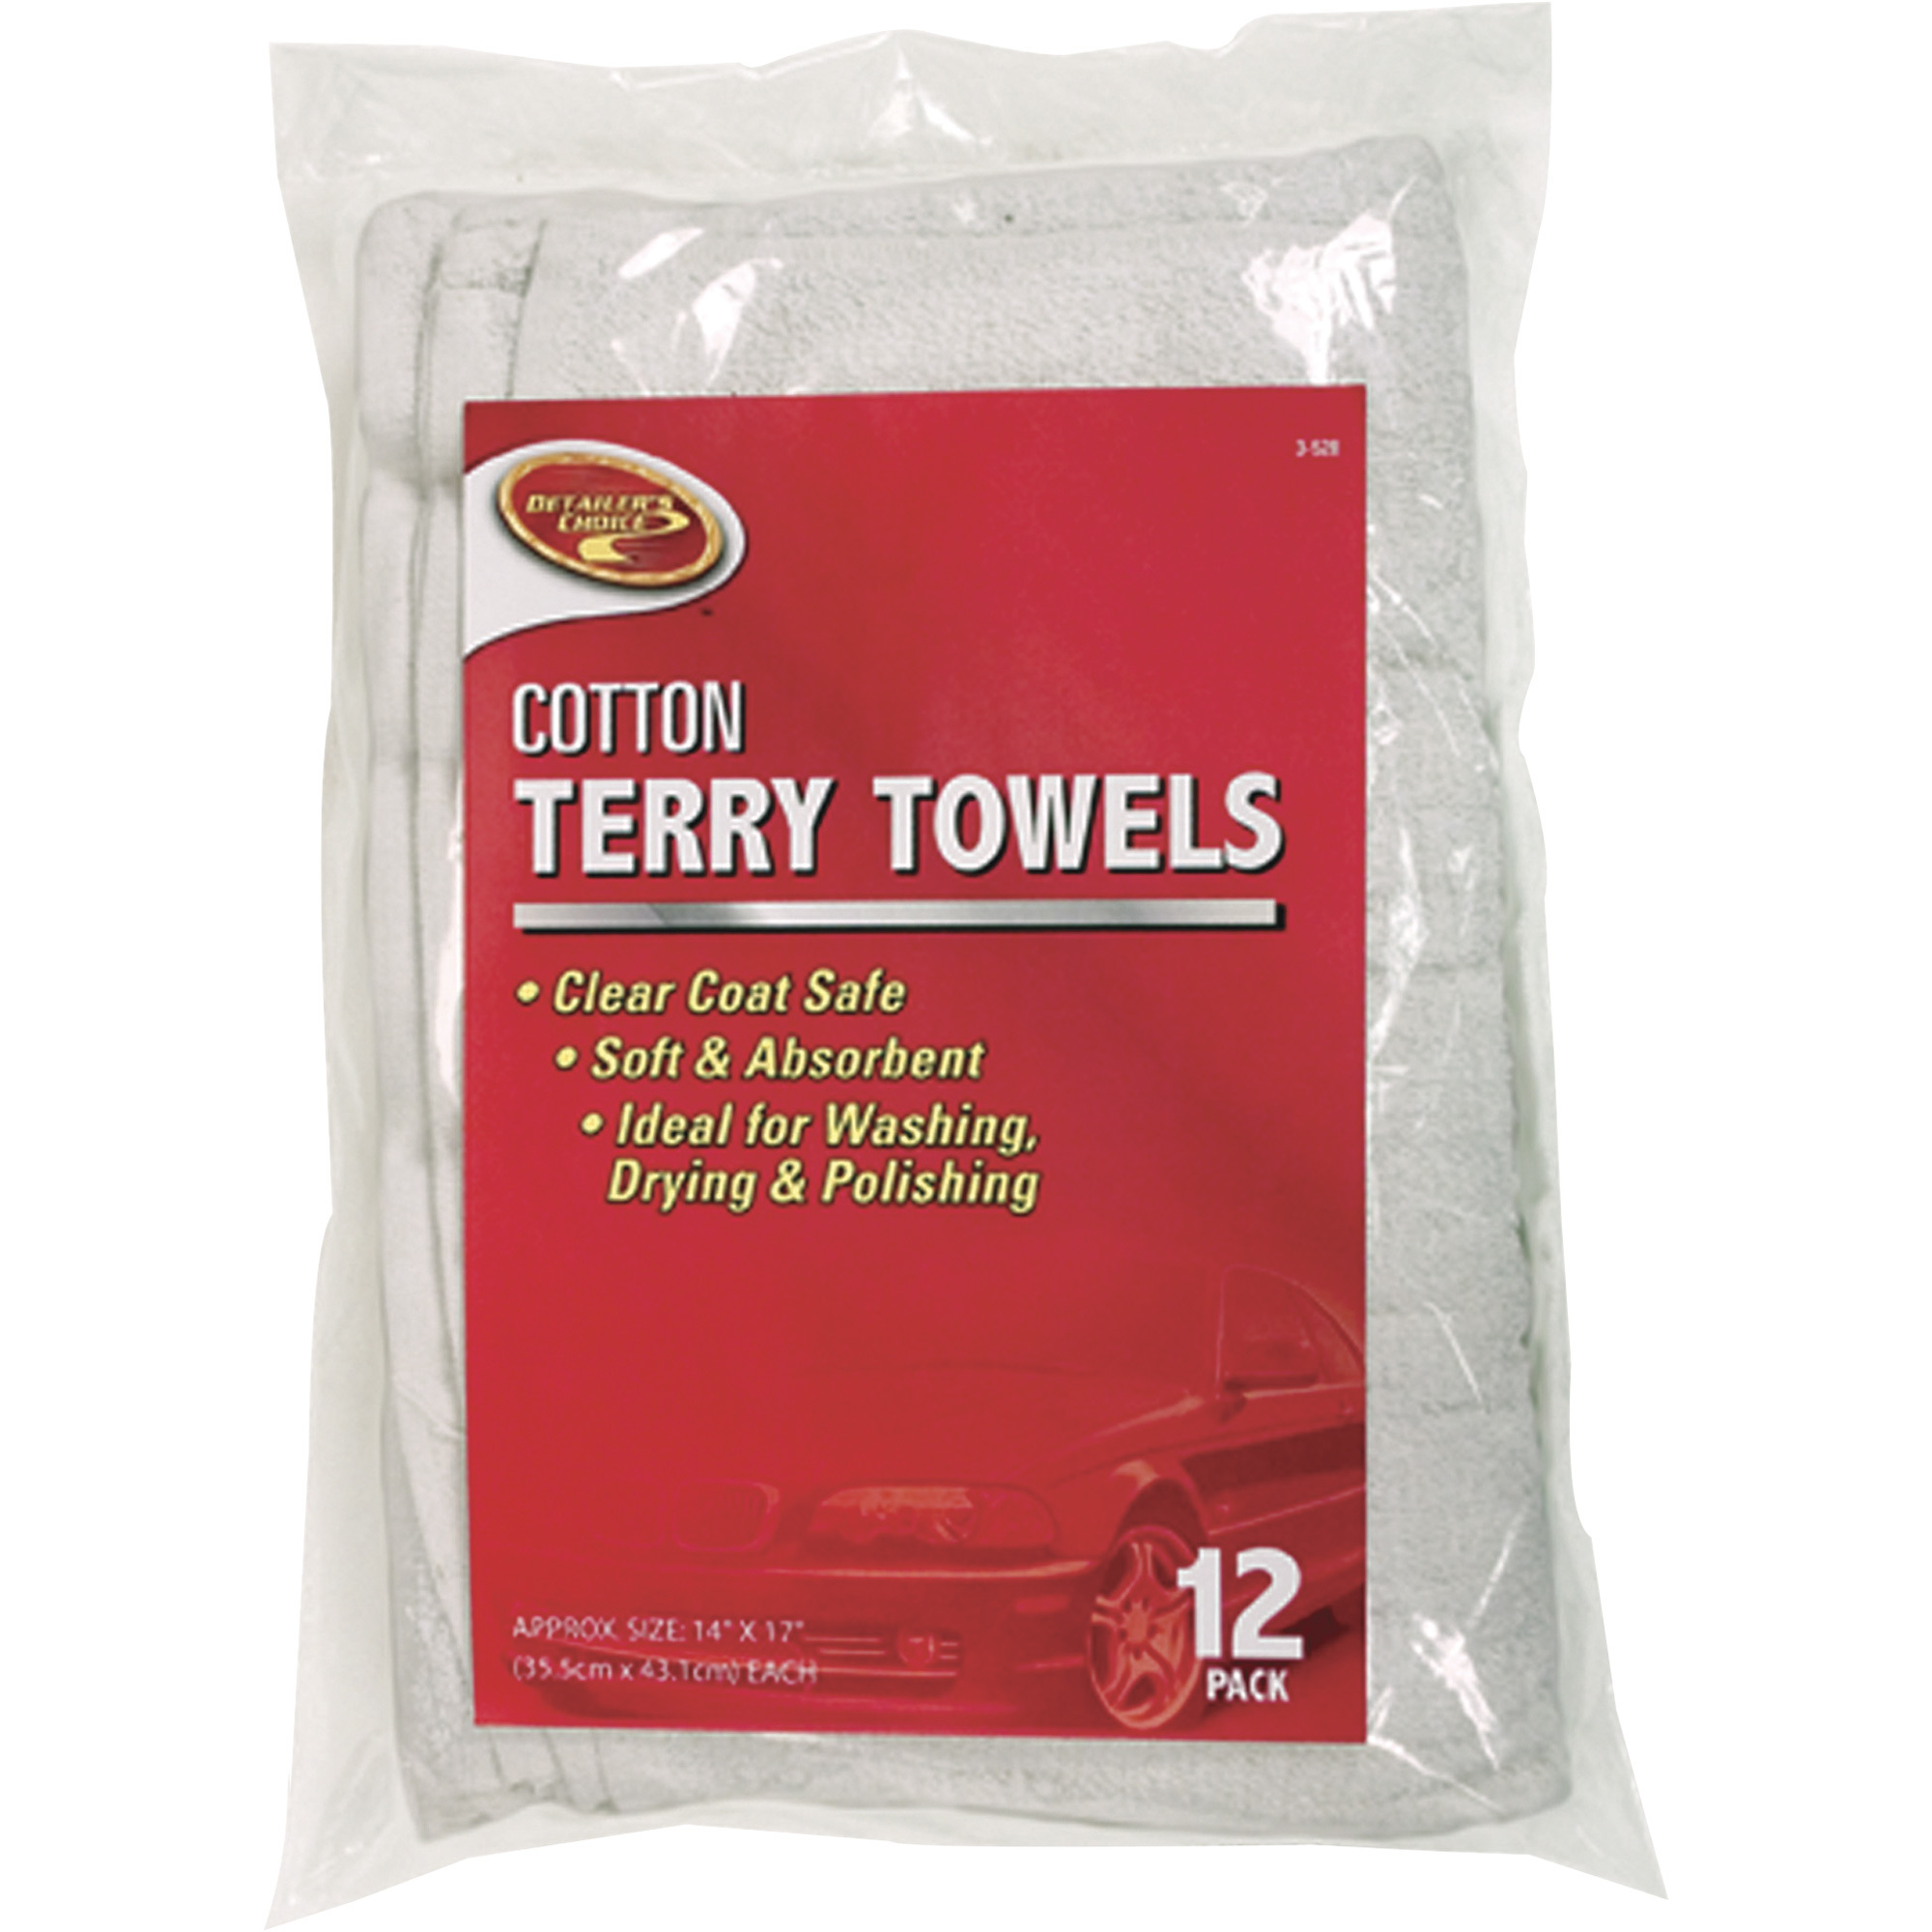 Detailer's Choice Cotton Terry Towels â 12-Pack